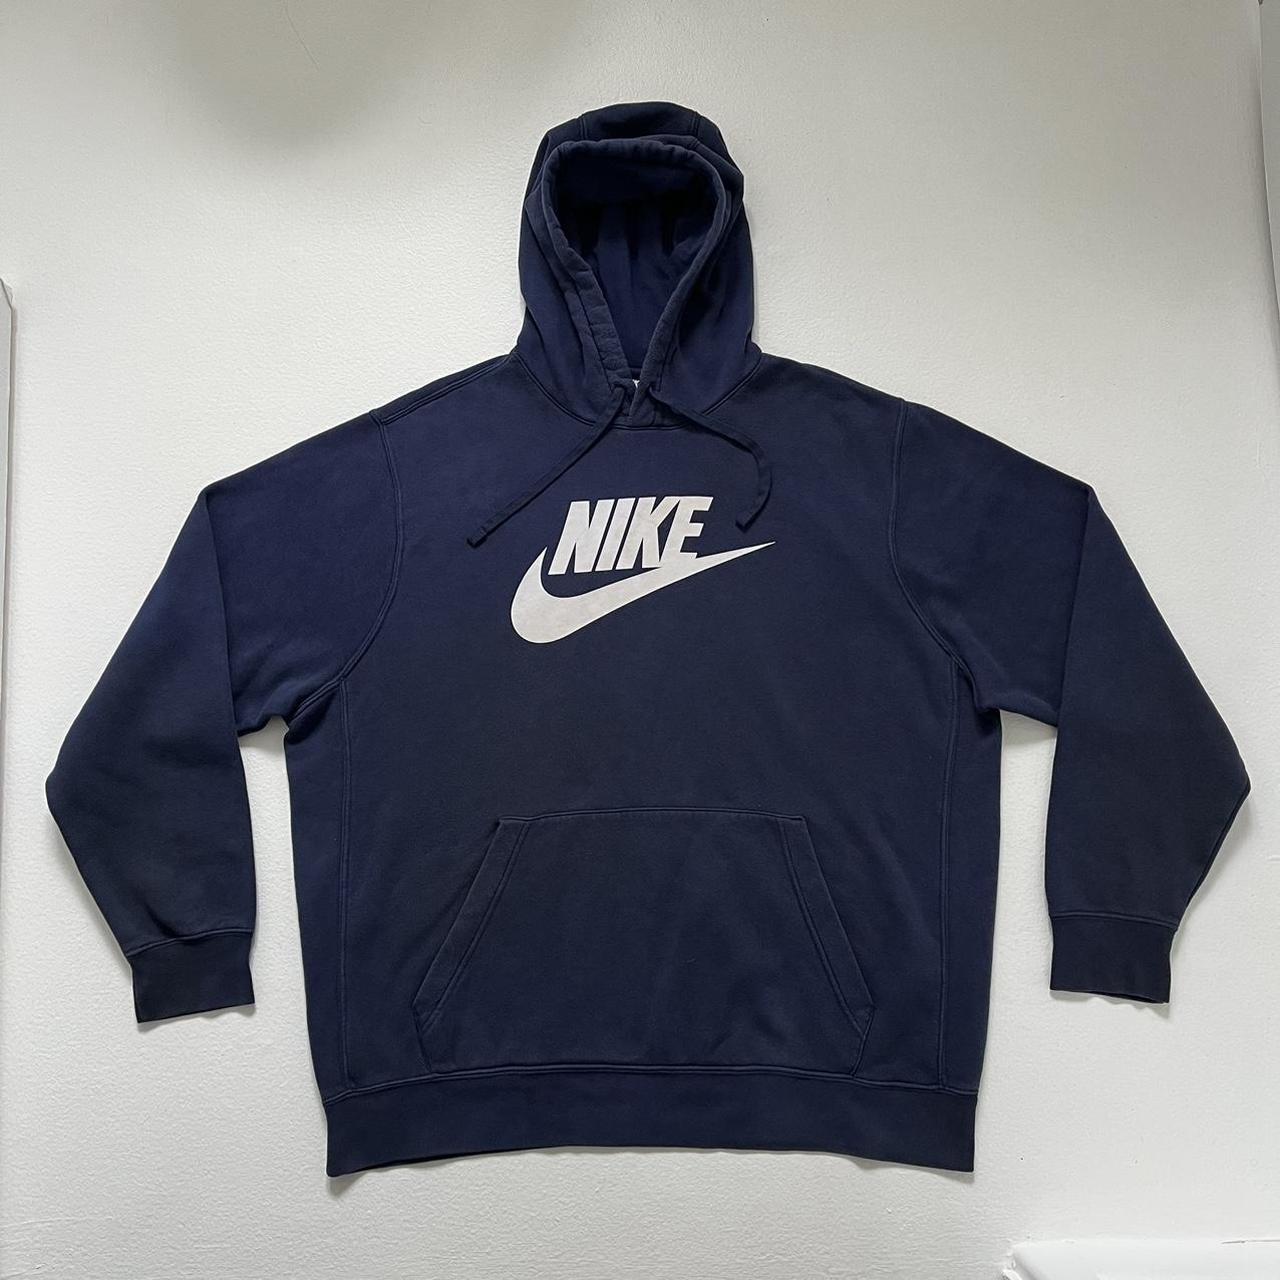 Vintage navy Nike hoodie - XXL Vintage navy blue... - Depop